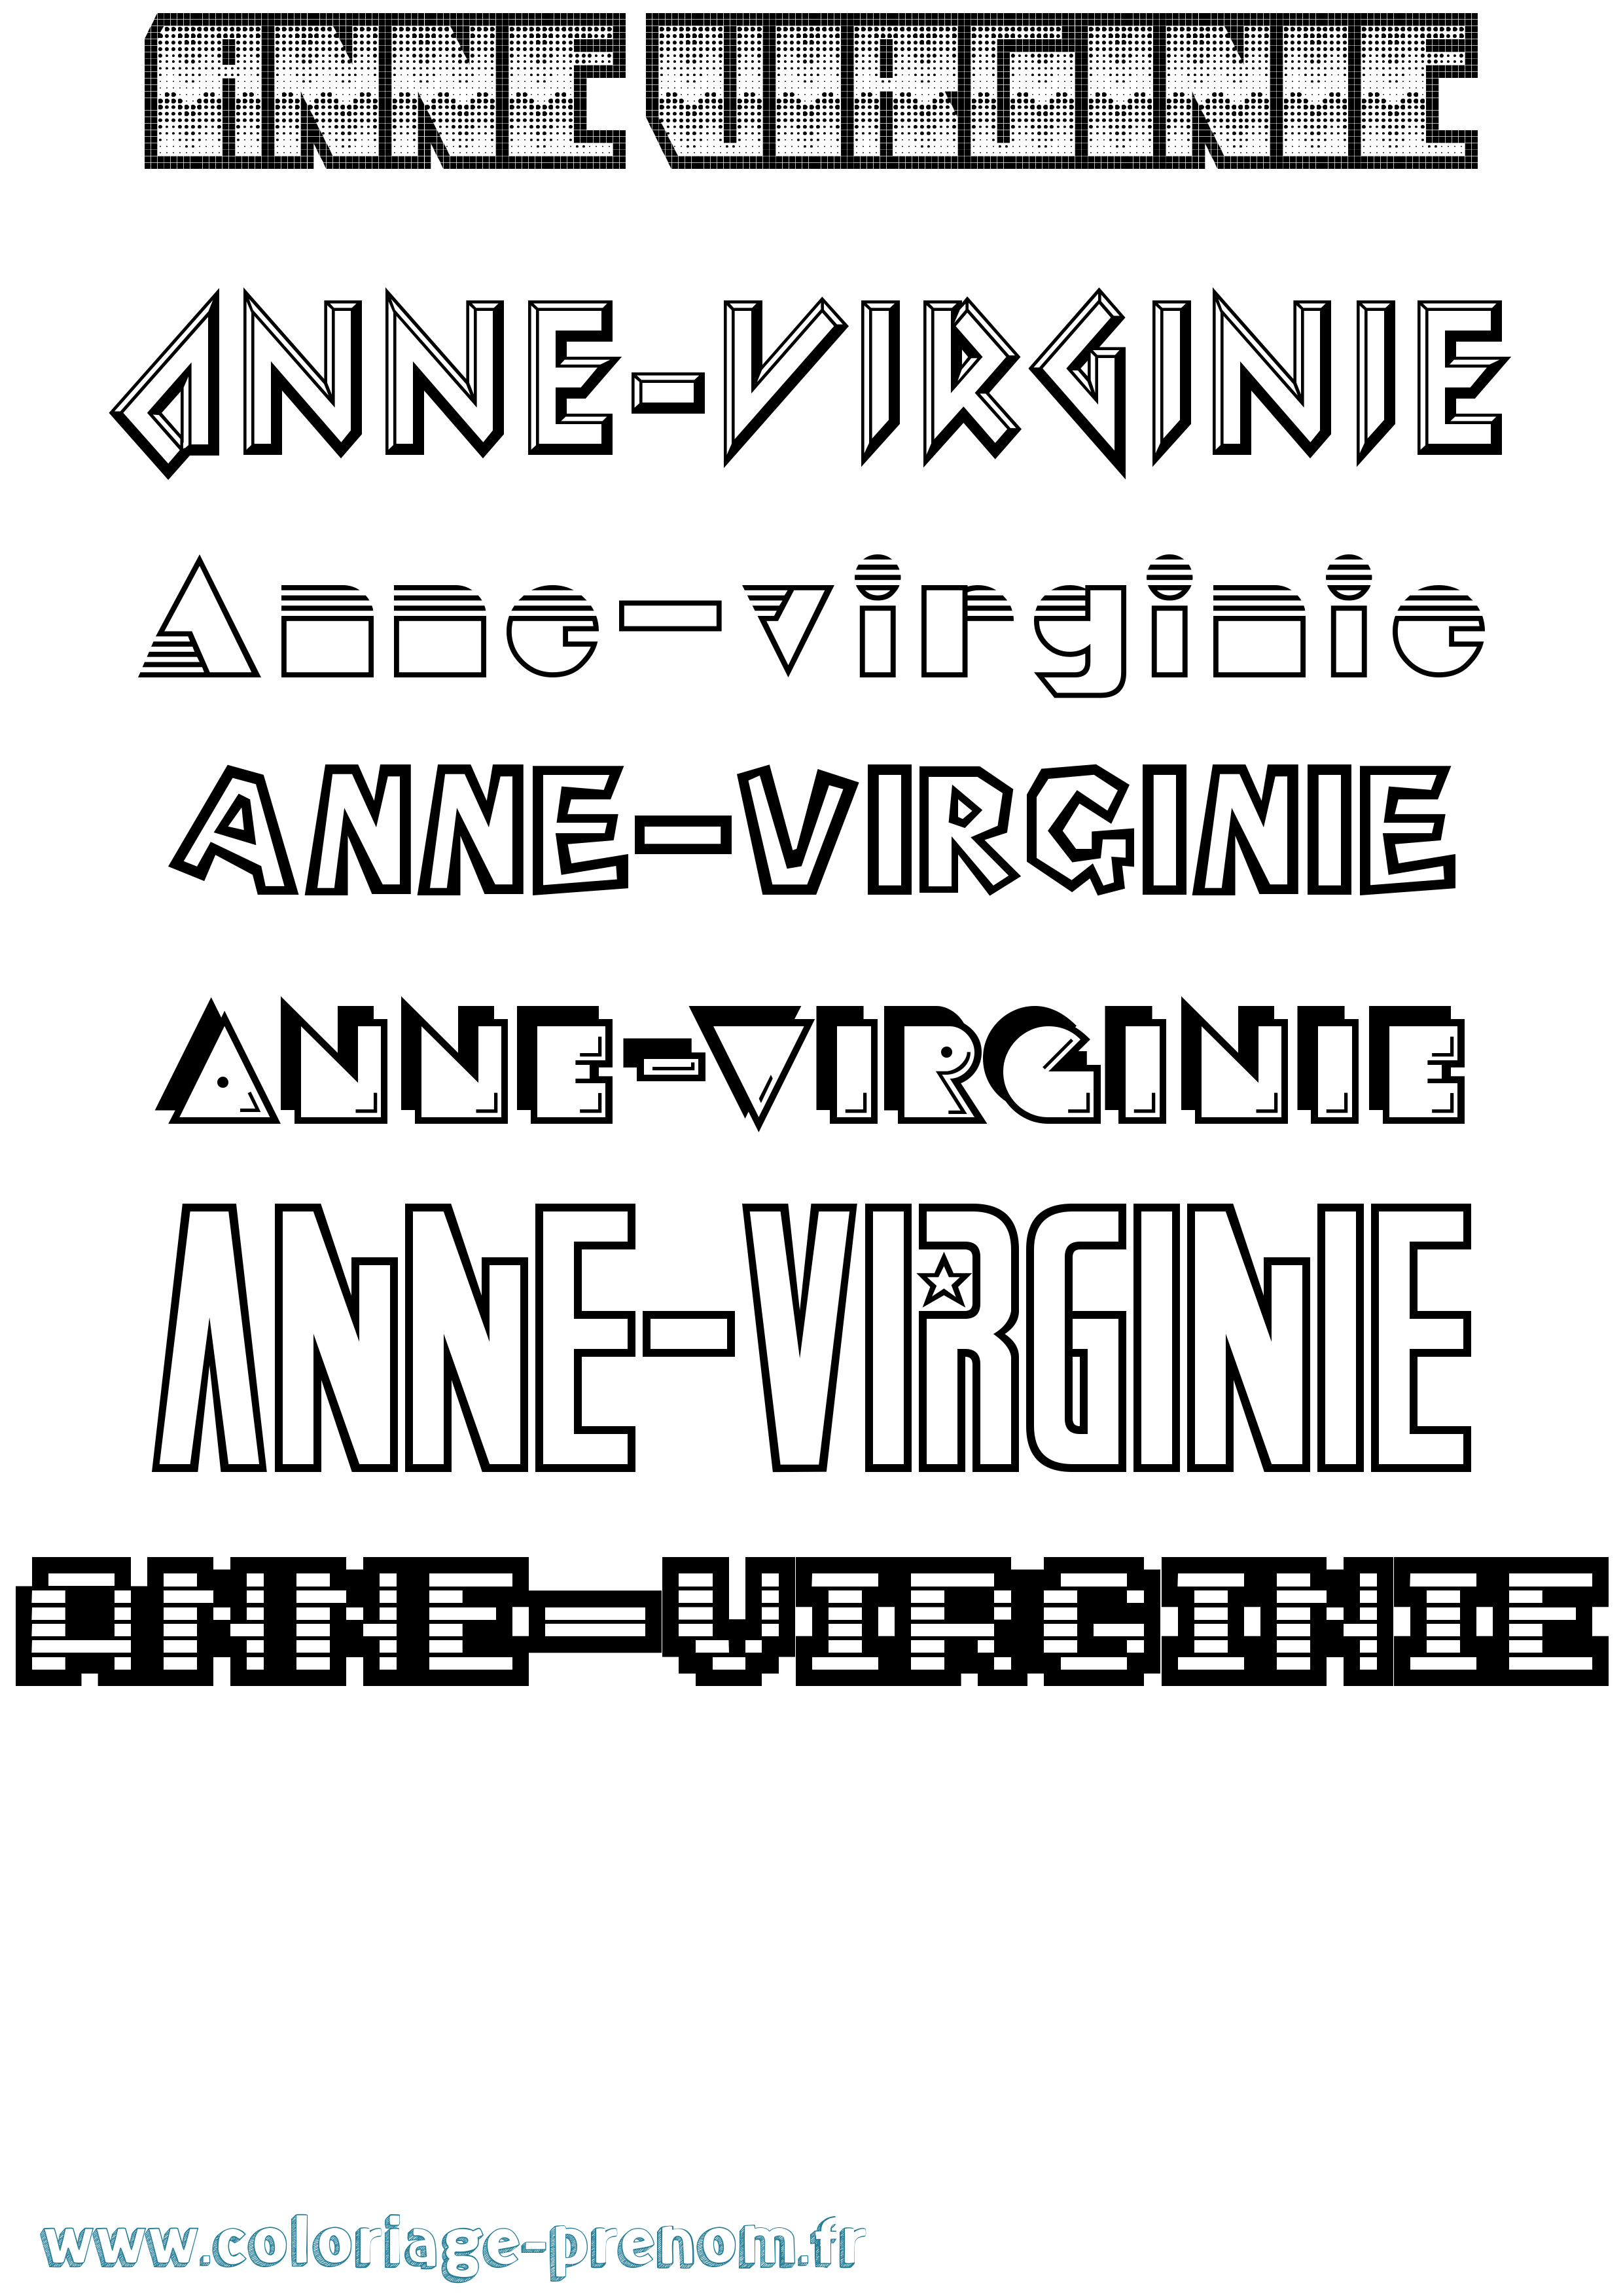 Coloriage prénom Anne-Virginie Jeux Vidéos